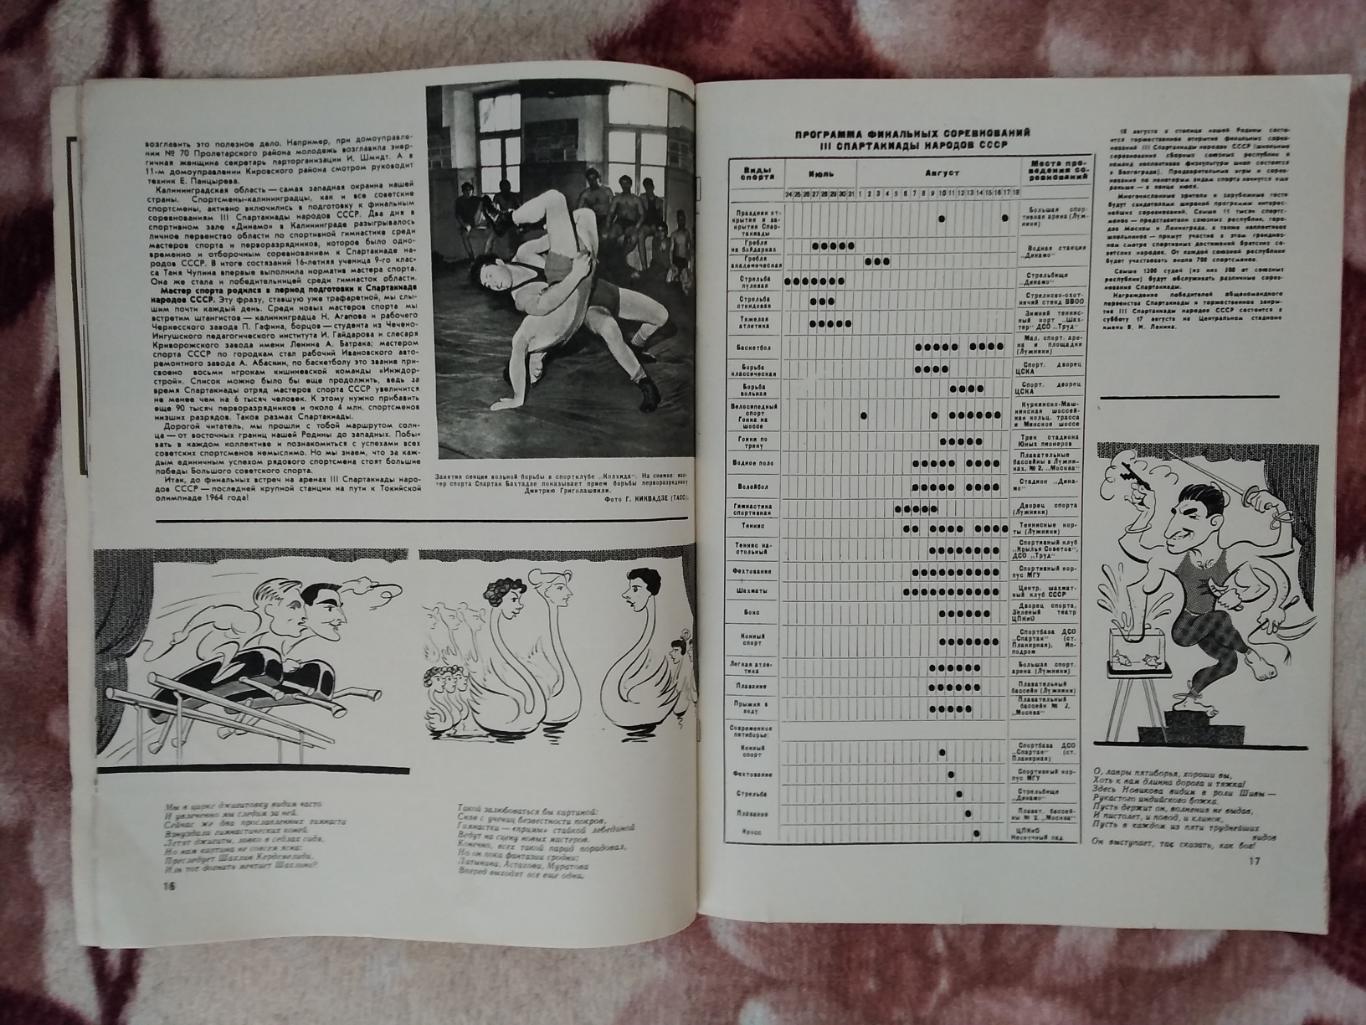 Журнал.Физкультура и спорт № 7 1963 г. (ФиС). 1